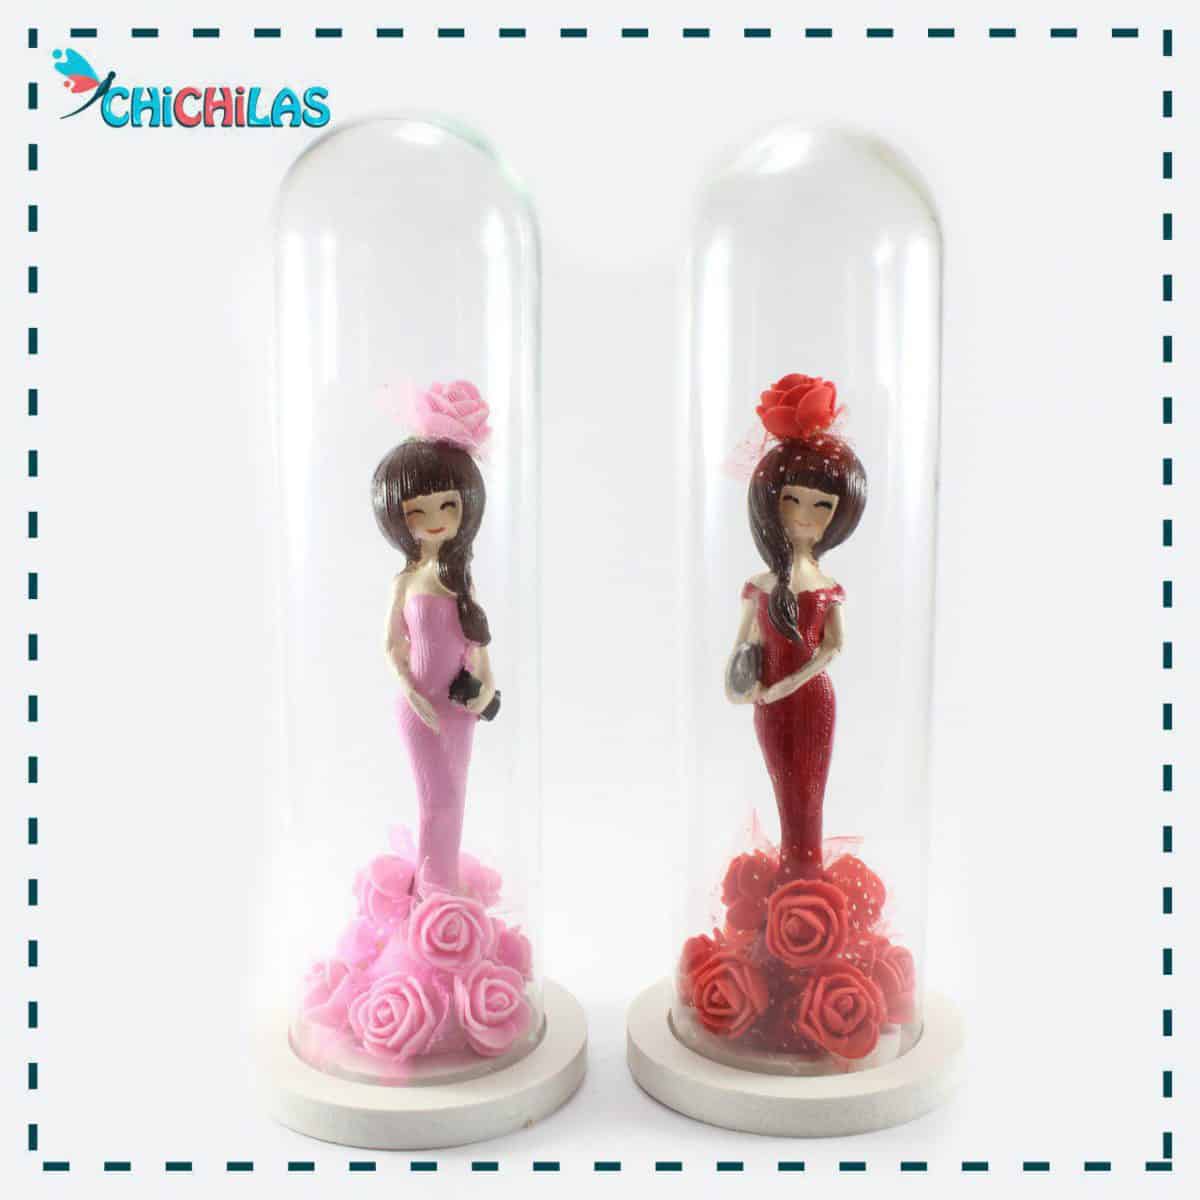 چیچیلاس - مجسمه دختر - مجسمه دختر شیشه ای - دکوری - هدیه - کادو - فروشگاه چیچیلاس - فروشگاه دکوری